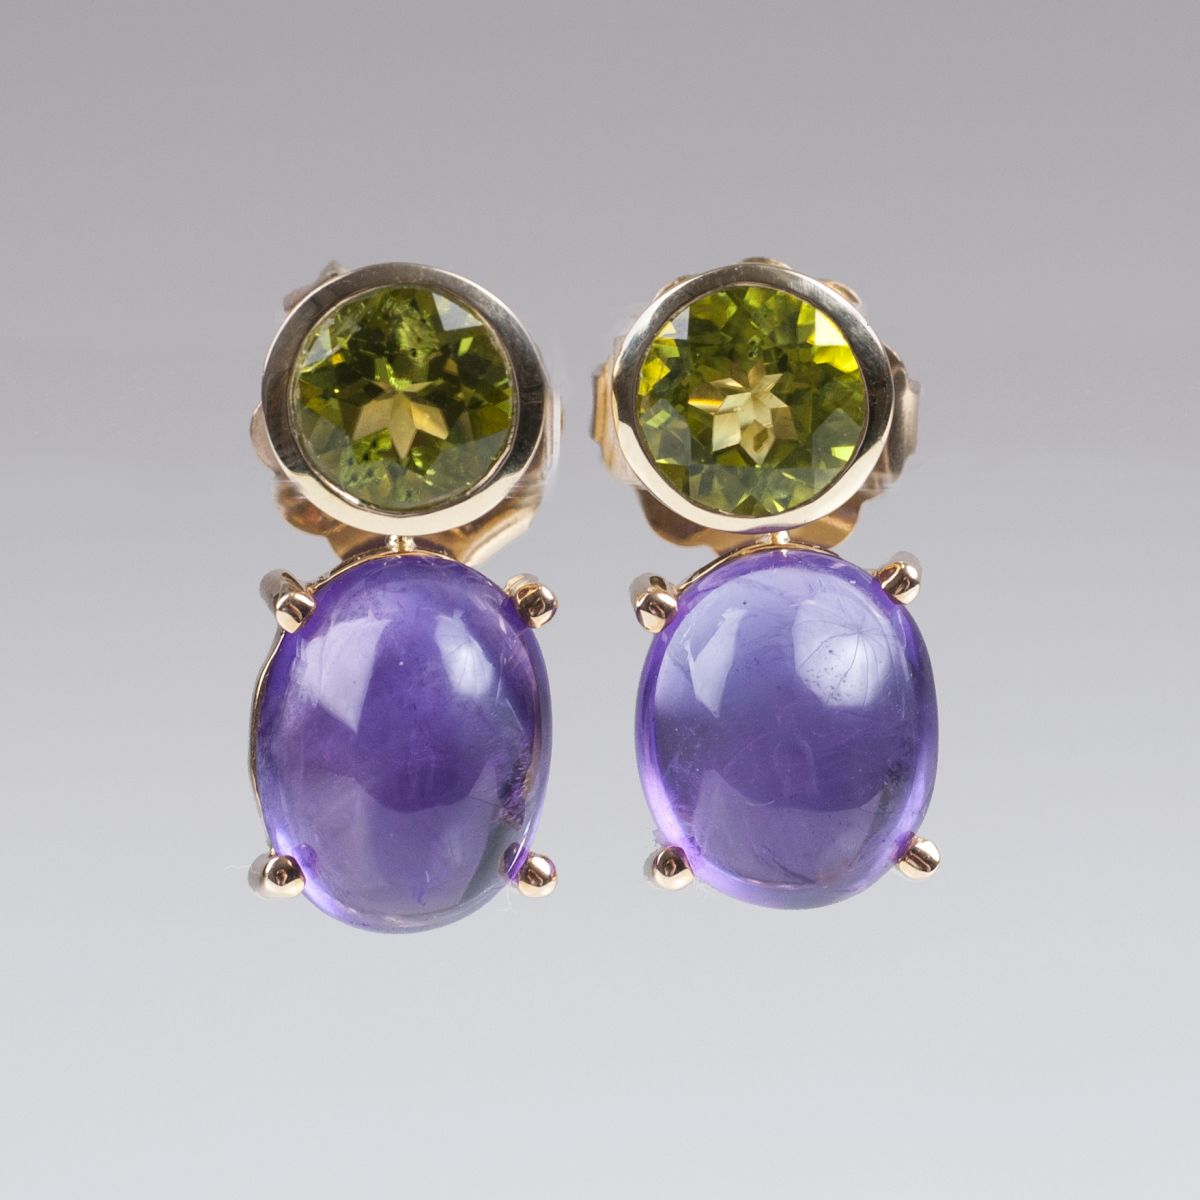 A pair of peridot amethyst earrings